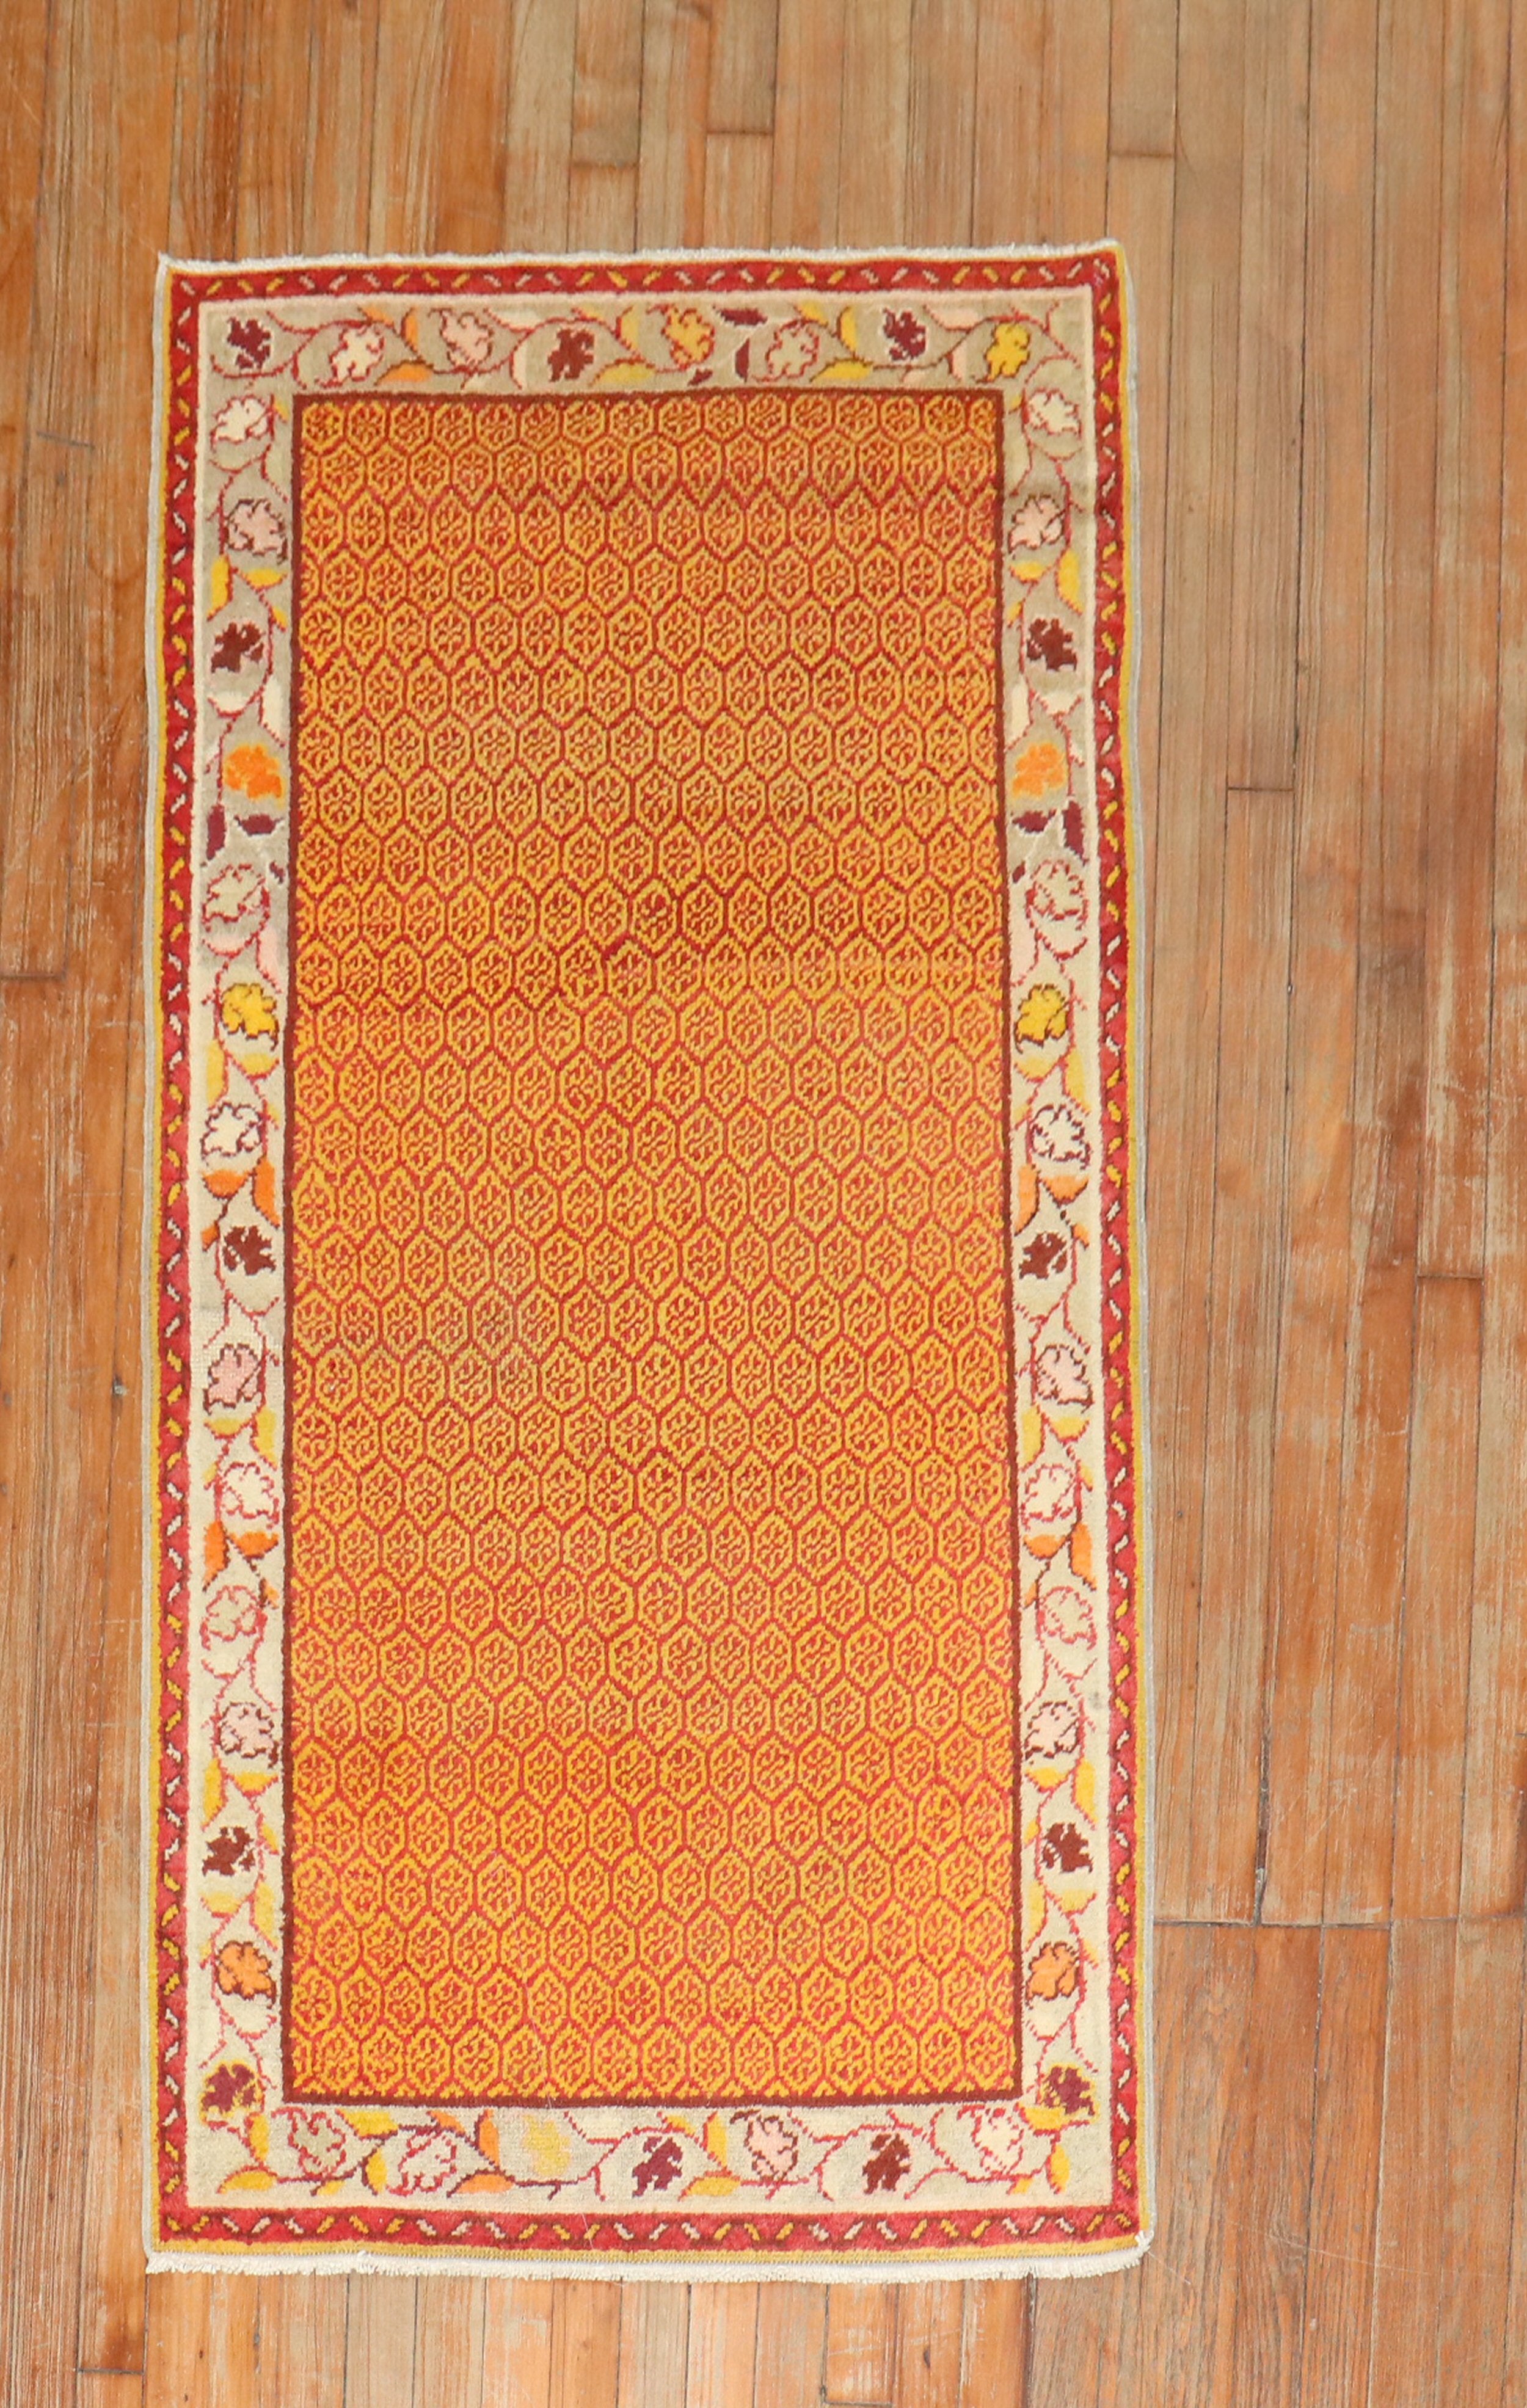 Türkischer anatolischer Teppich aus der Jahrhundertmitte in Orangenschalenfarbe.